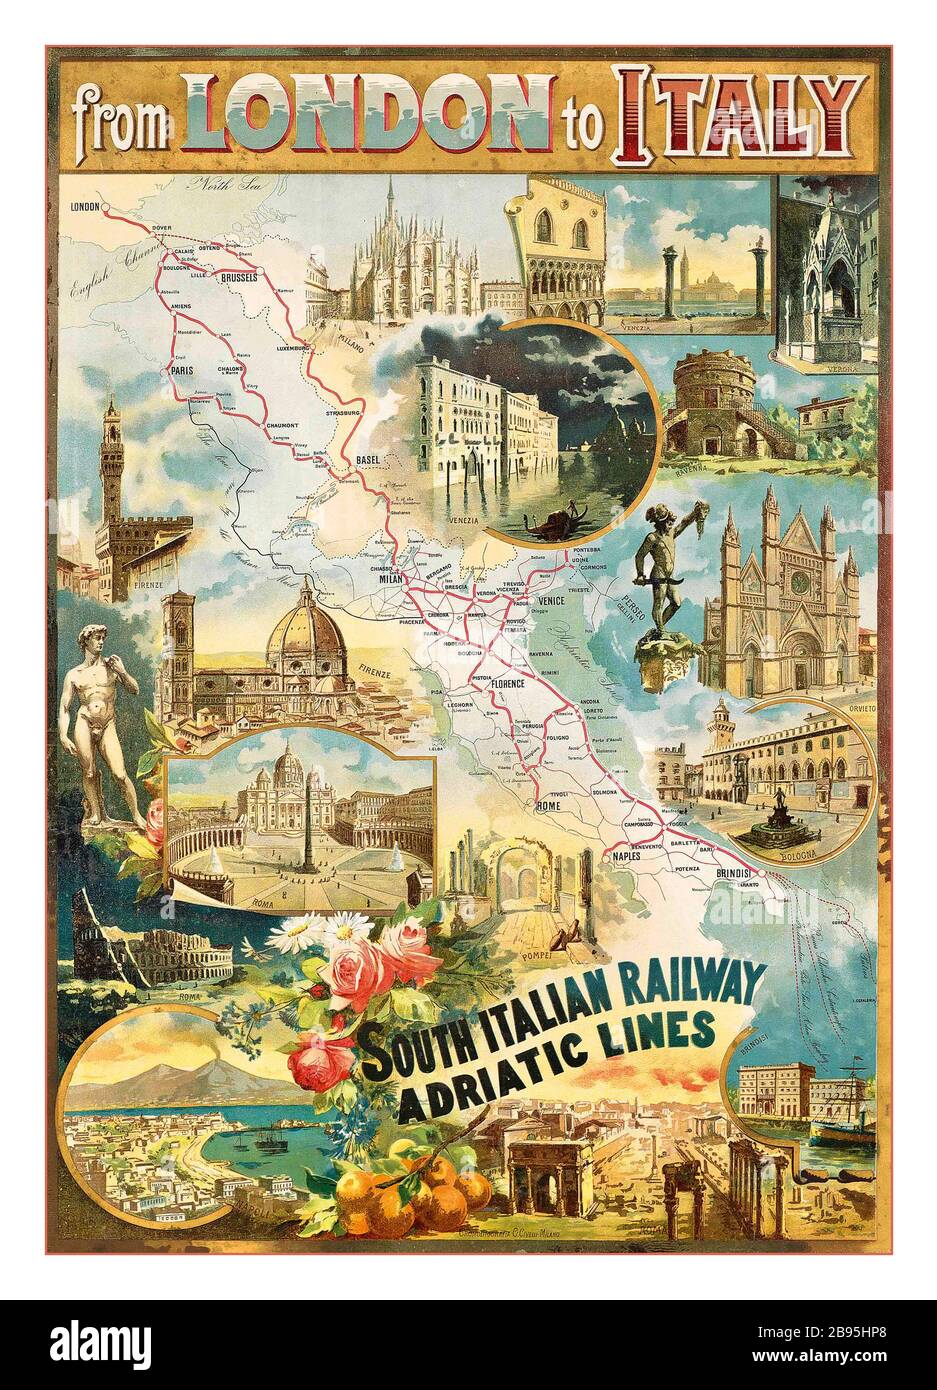 Londres à l'Italie 1900's Railway Transport Vintage Travel Poster 1900 DE LONDRES À L'ITALIE avec chemin de fer sud-italien lignes Adriatique lithographie en couleur, imprimé par G.Civelli, Milano, Banque D'Images